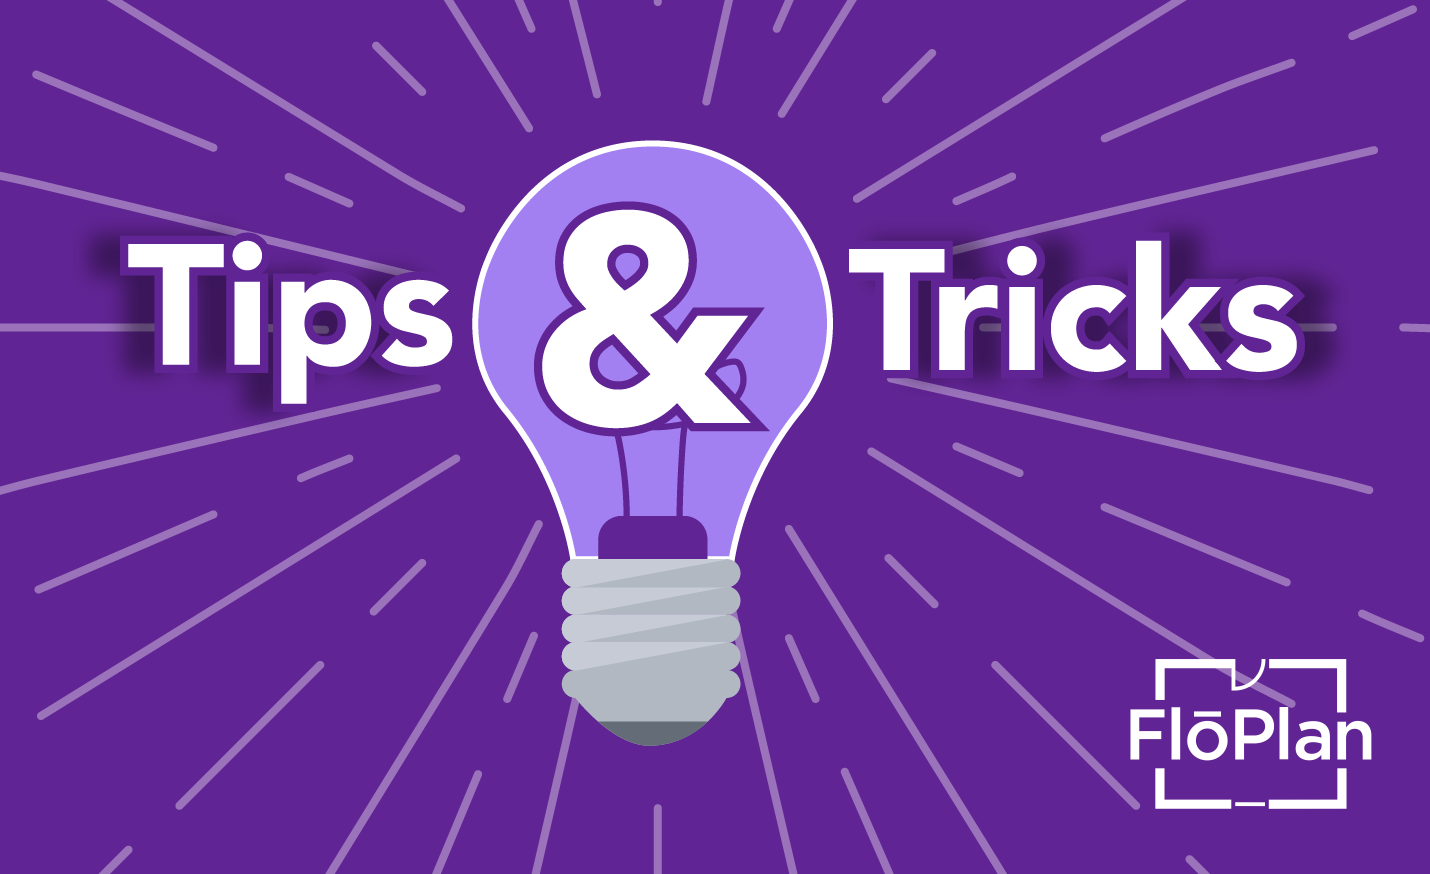 tips & tricks banner